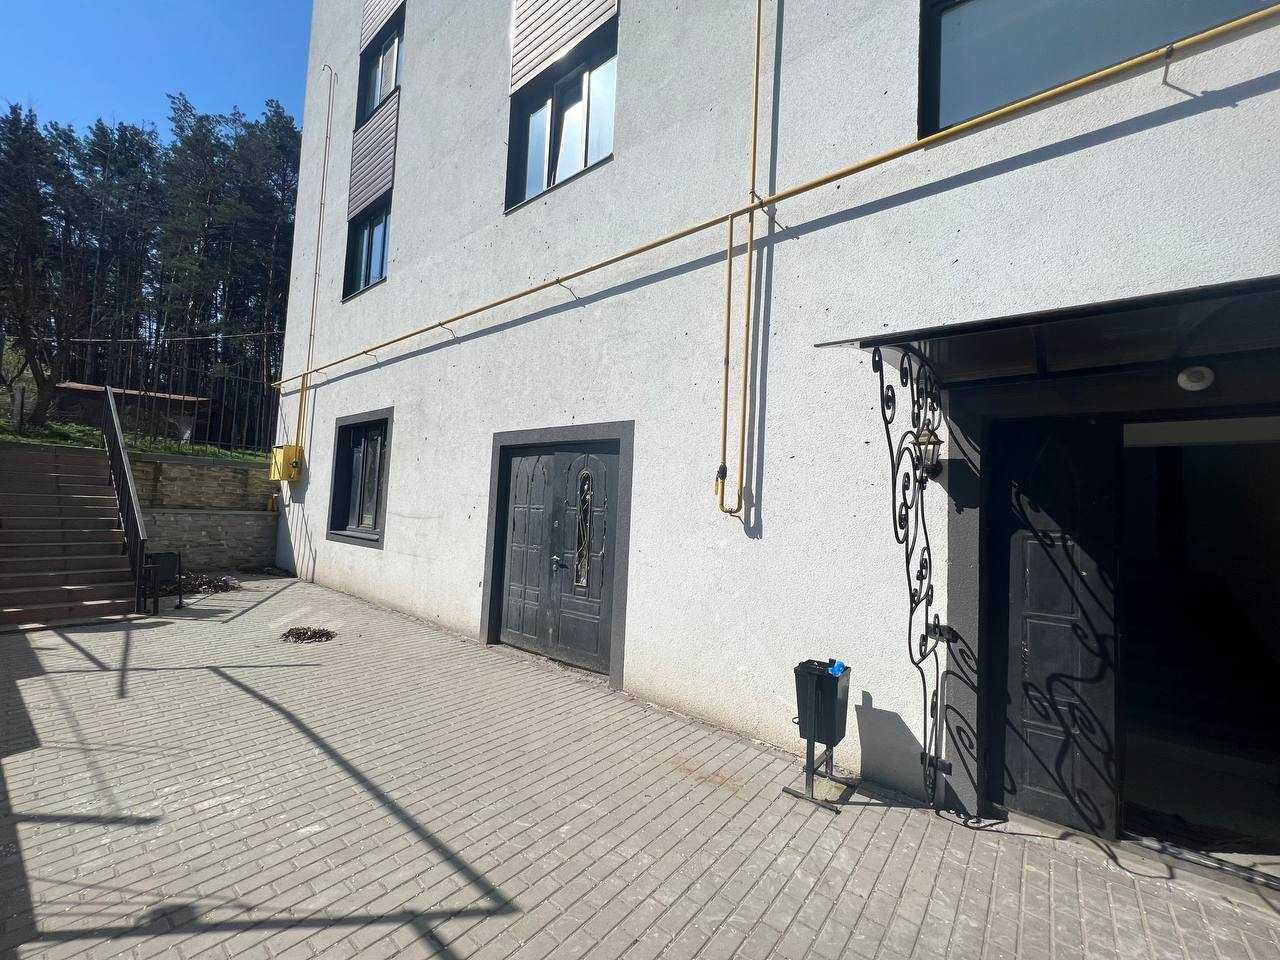 Продаж комерційного приміщення 80 м2 ЖК "Колібрі" в м. Ірпінь.